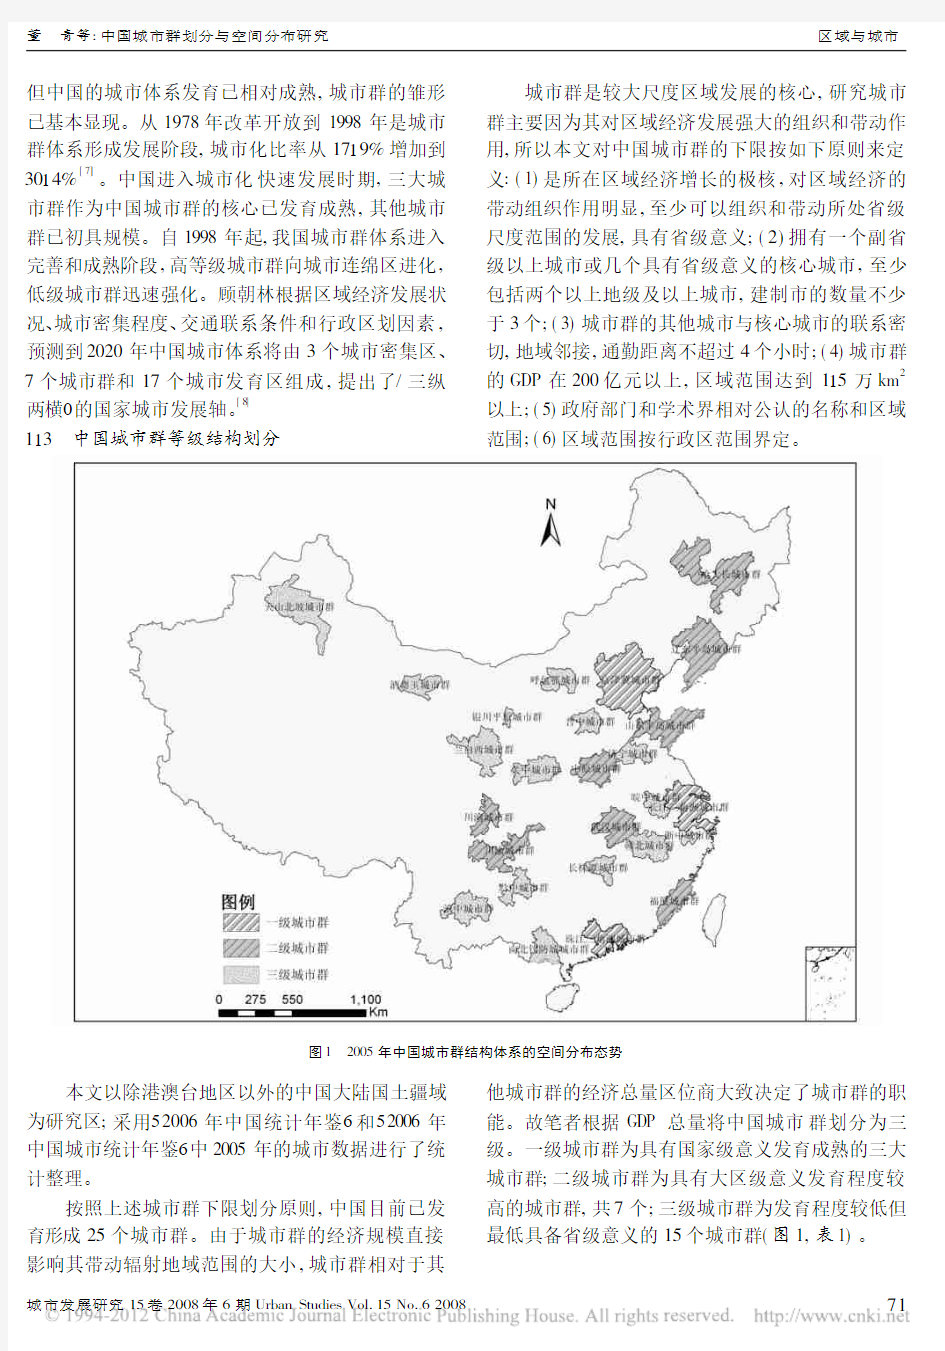 中国城市群划分与空间分布研究